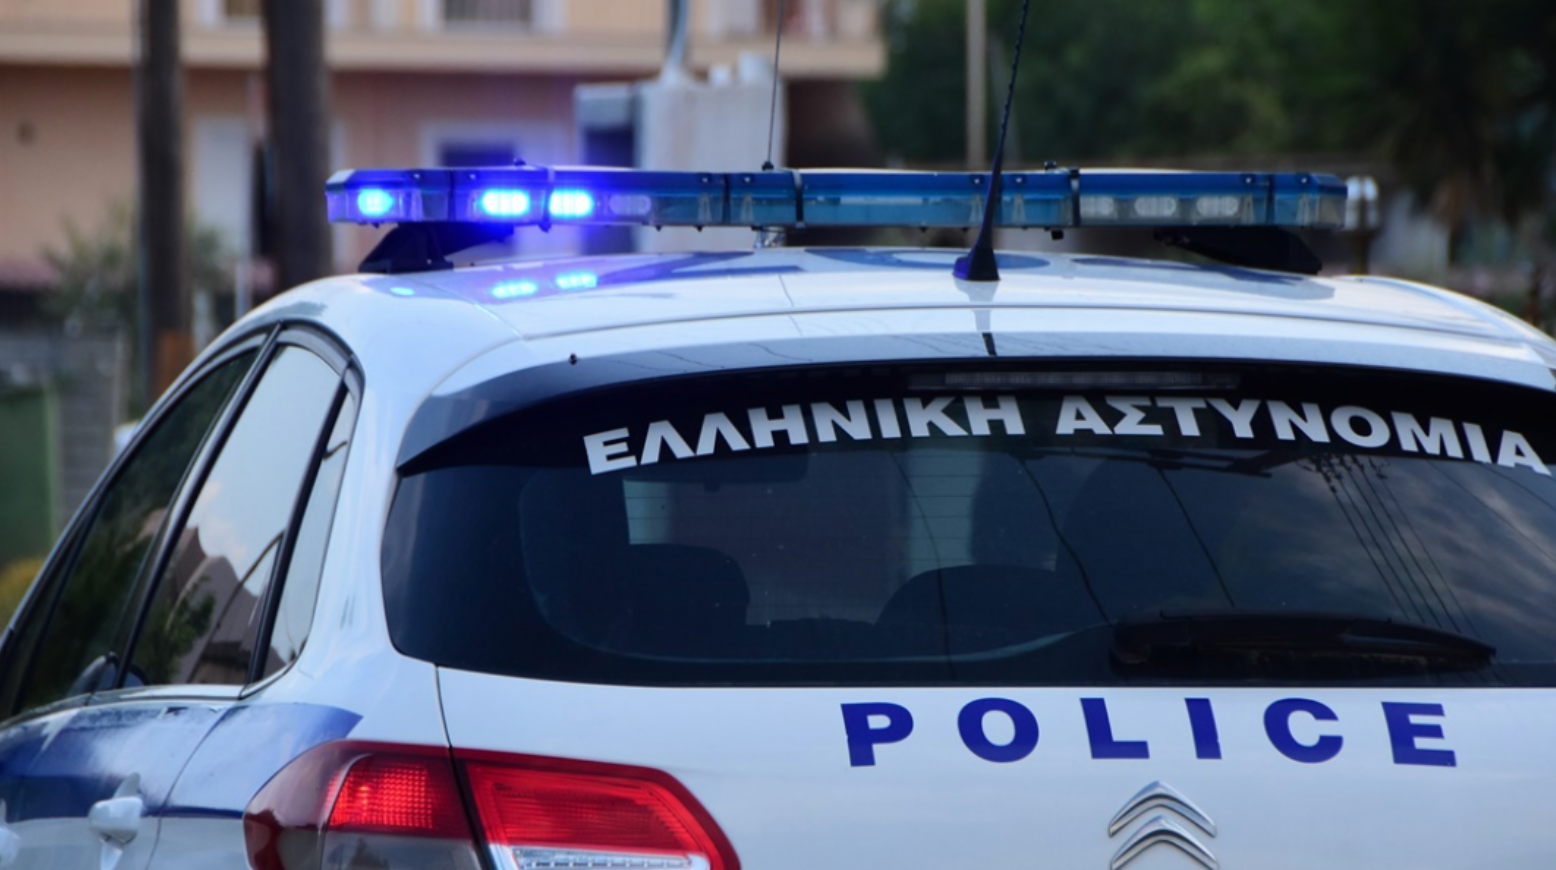 Θεσσαλονίκη: “Άνοιγαν” αυτοκίνητα σε παραλία της Επανομής και έκλεβαν χρήματα